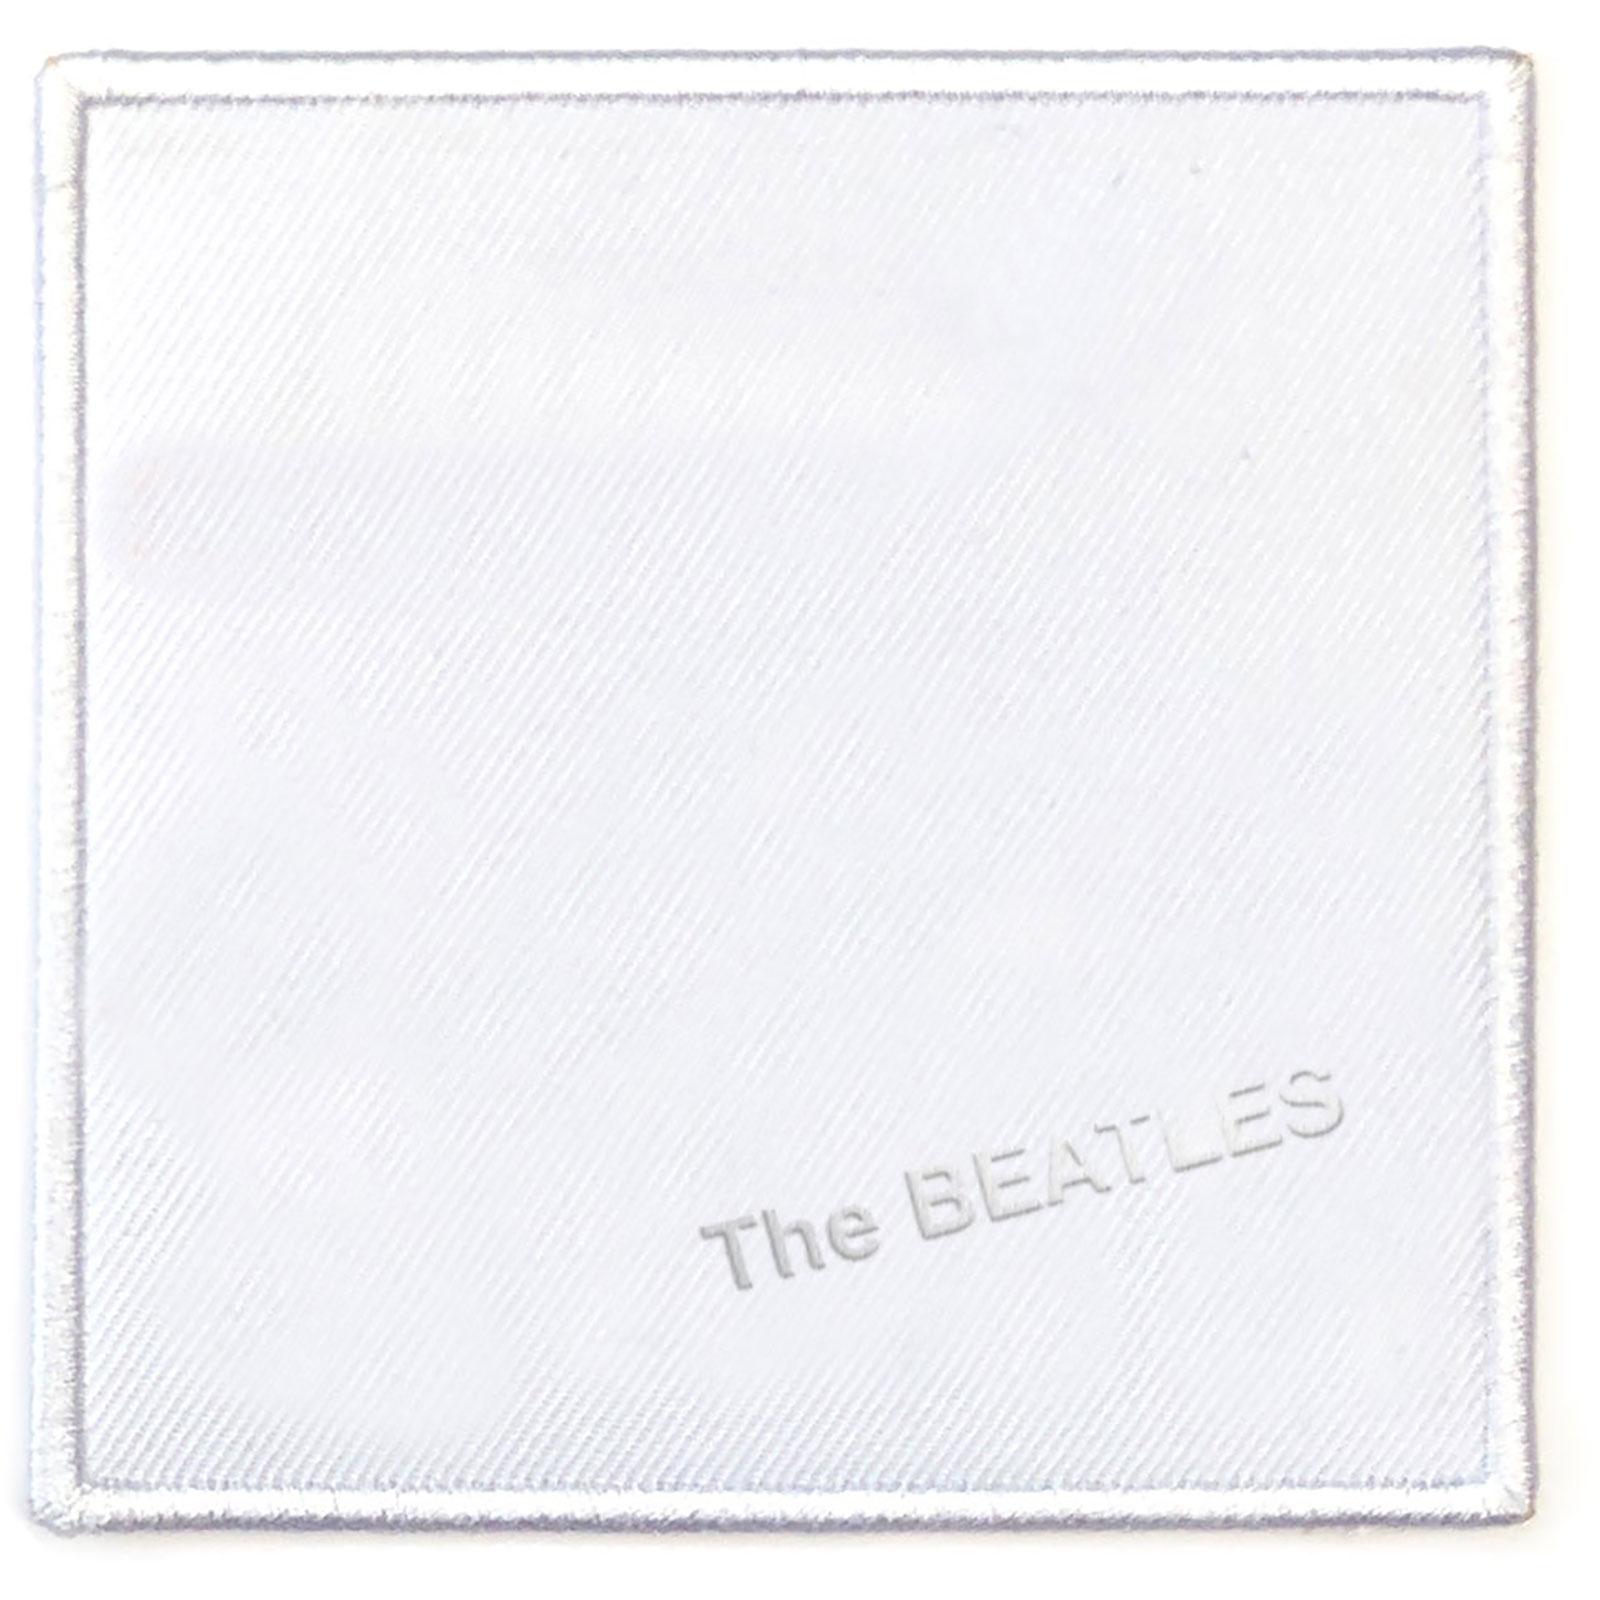 (ビートルズ) The Beatles オフィシャル商品 White Album ワッペン スタンダード アイロン装着 パッチ 【海外通販】